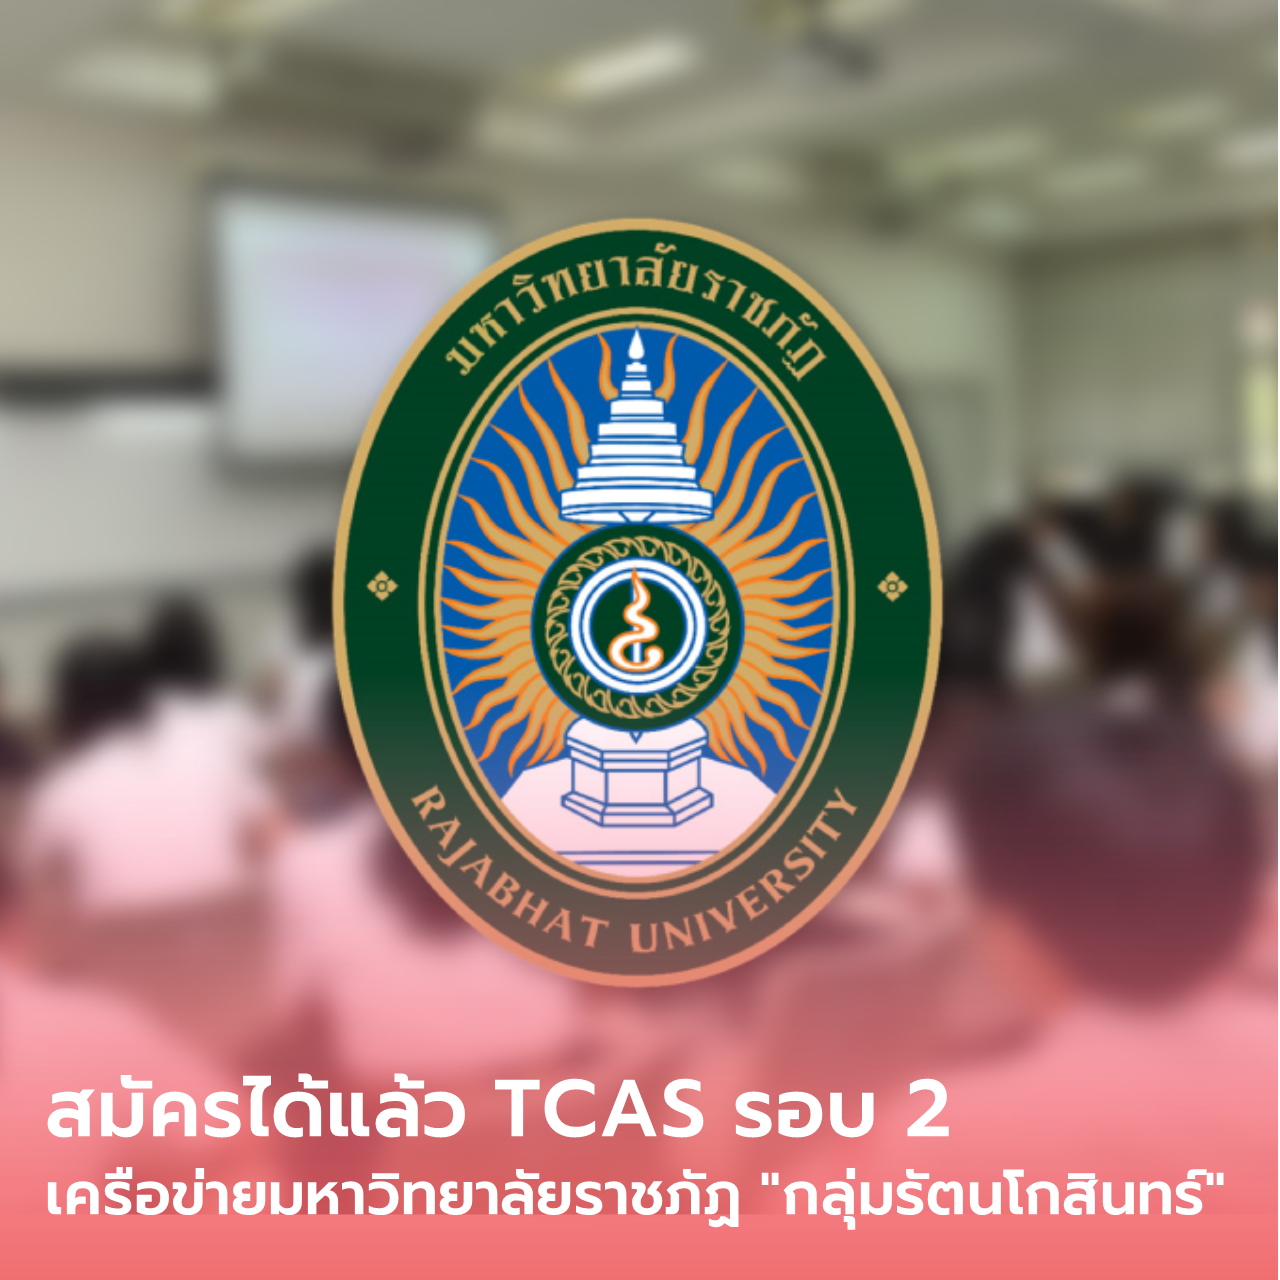  สมัครได้แล้ว TCAS รอบ 2 เครือข่ายมหาวิทยาลัยราชภัฏ “กลุ่มรัตนโกสินทร์”